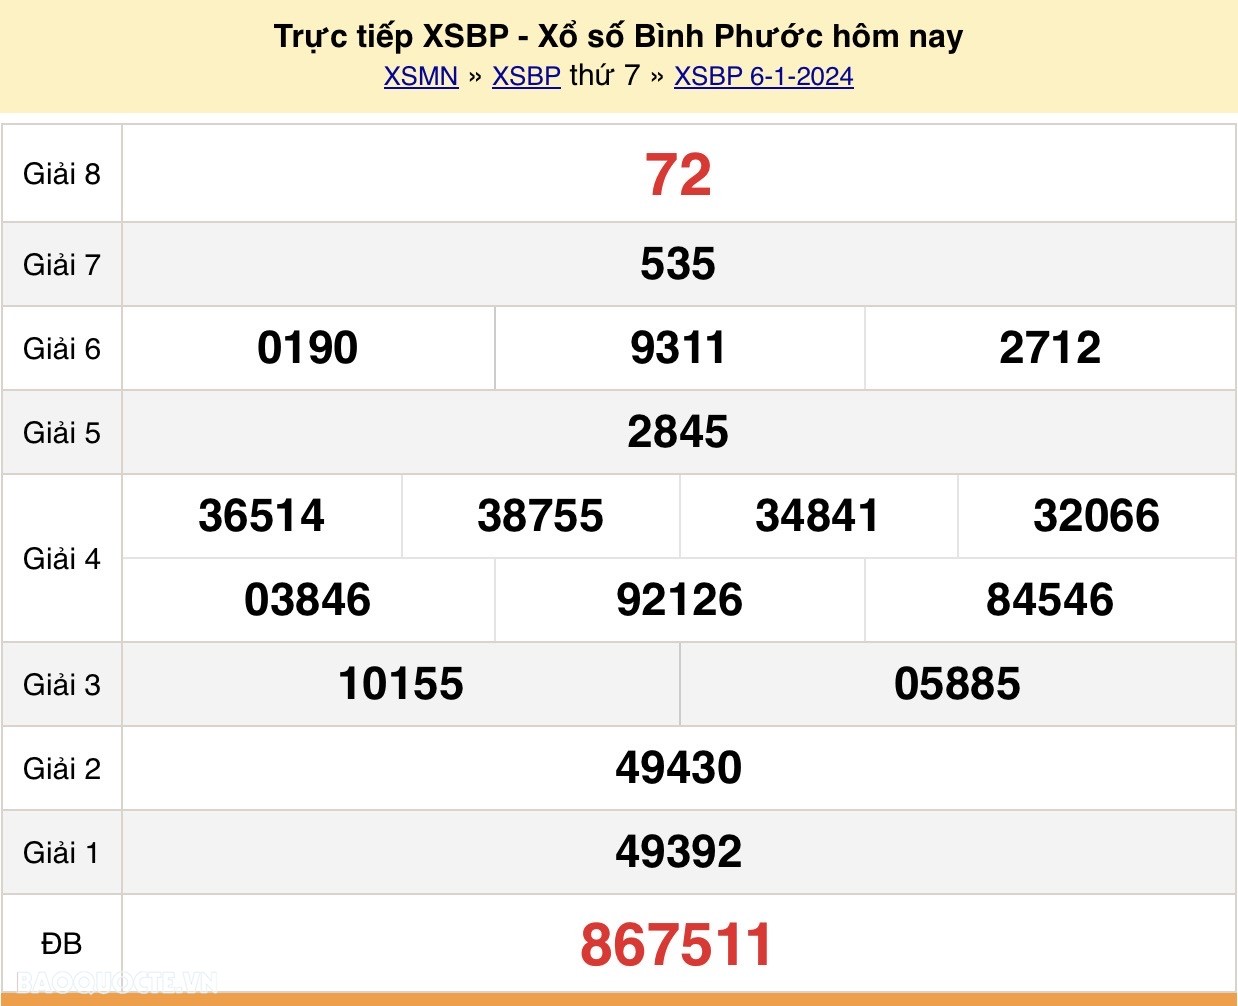 XSBP 13/1, Trực tiếp kết quả xổ số Bình Phước hôm nay 13/1/2024 - KQXSBP thứ 7